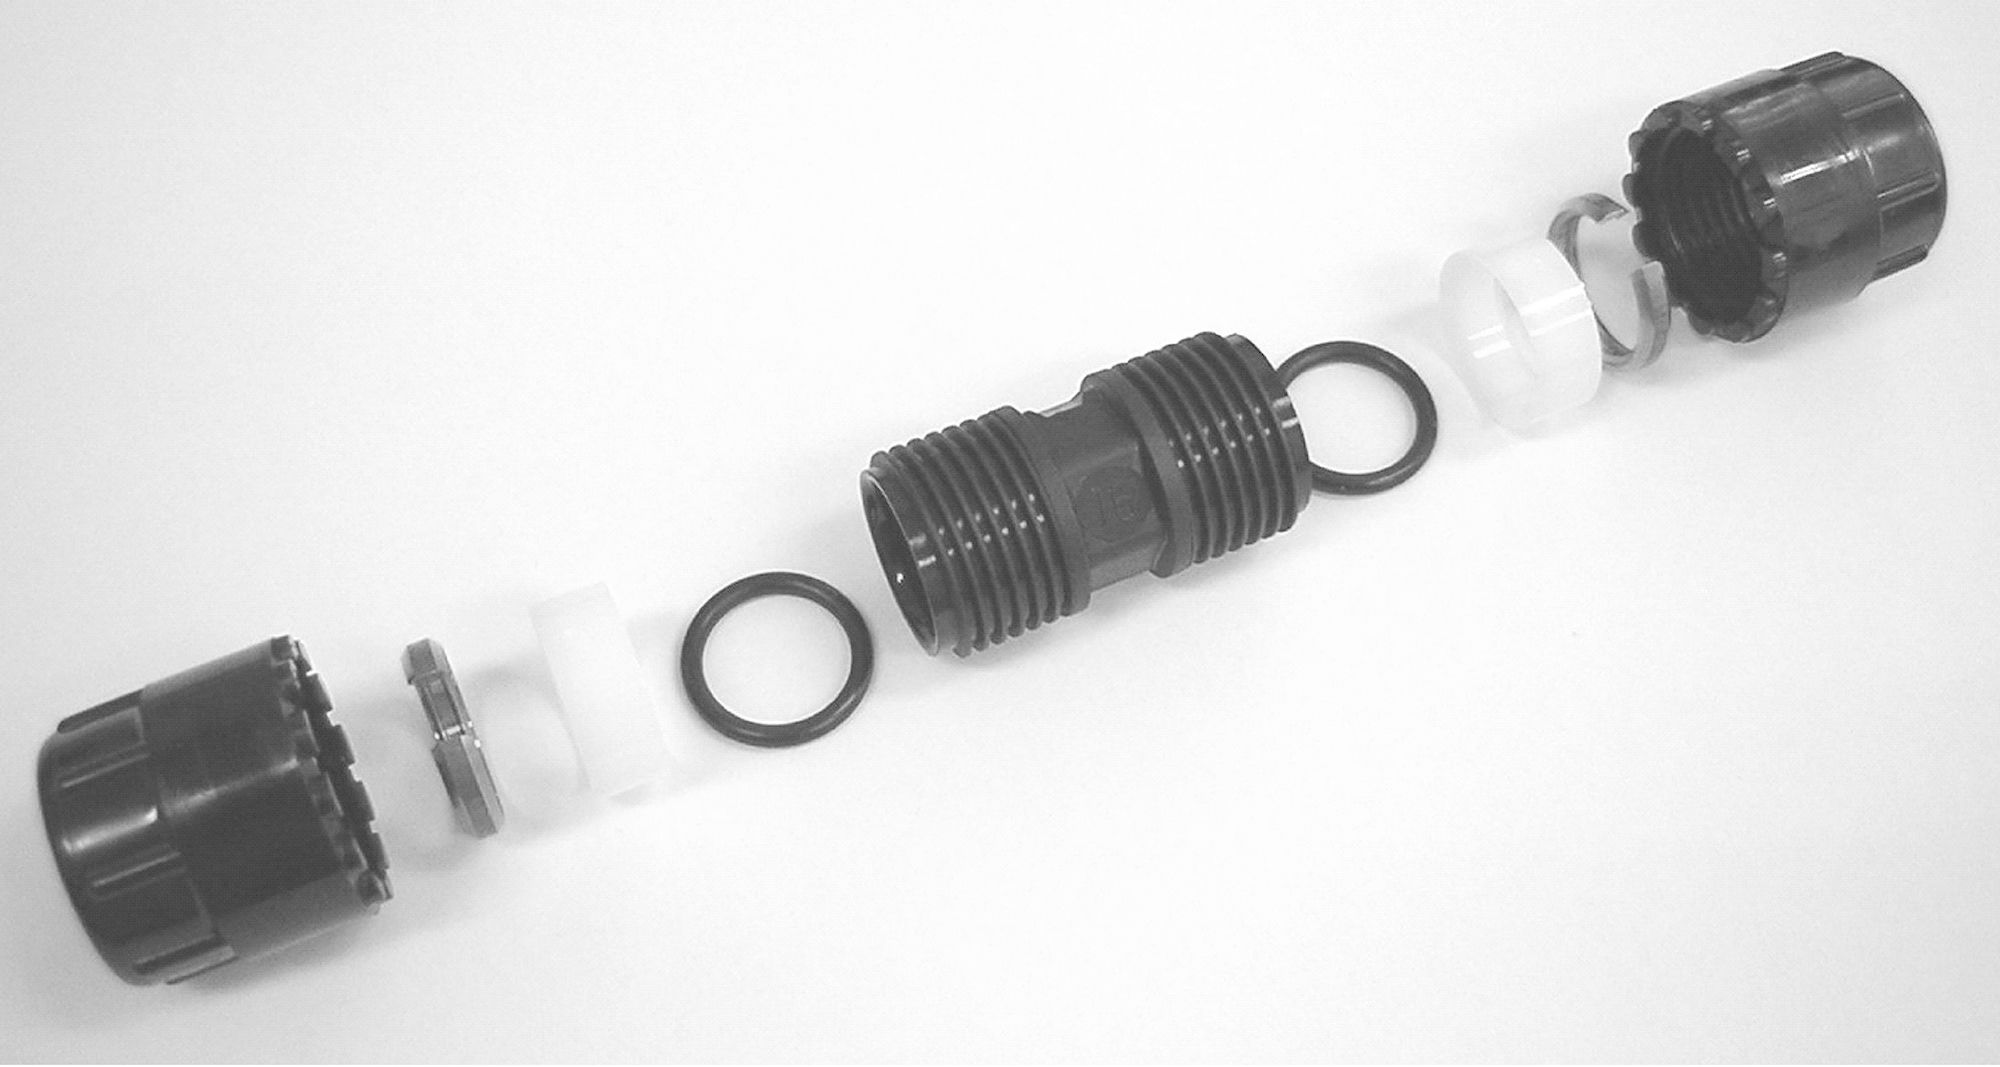 Simplast rechte koppeling 16 mm, zwart